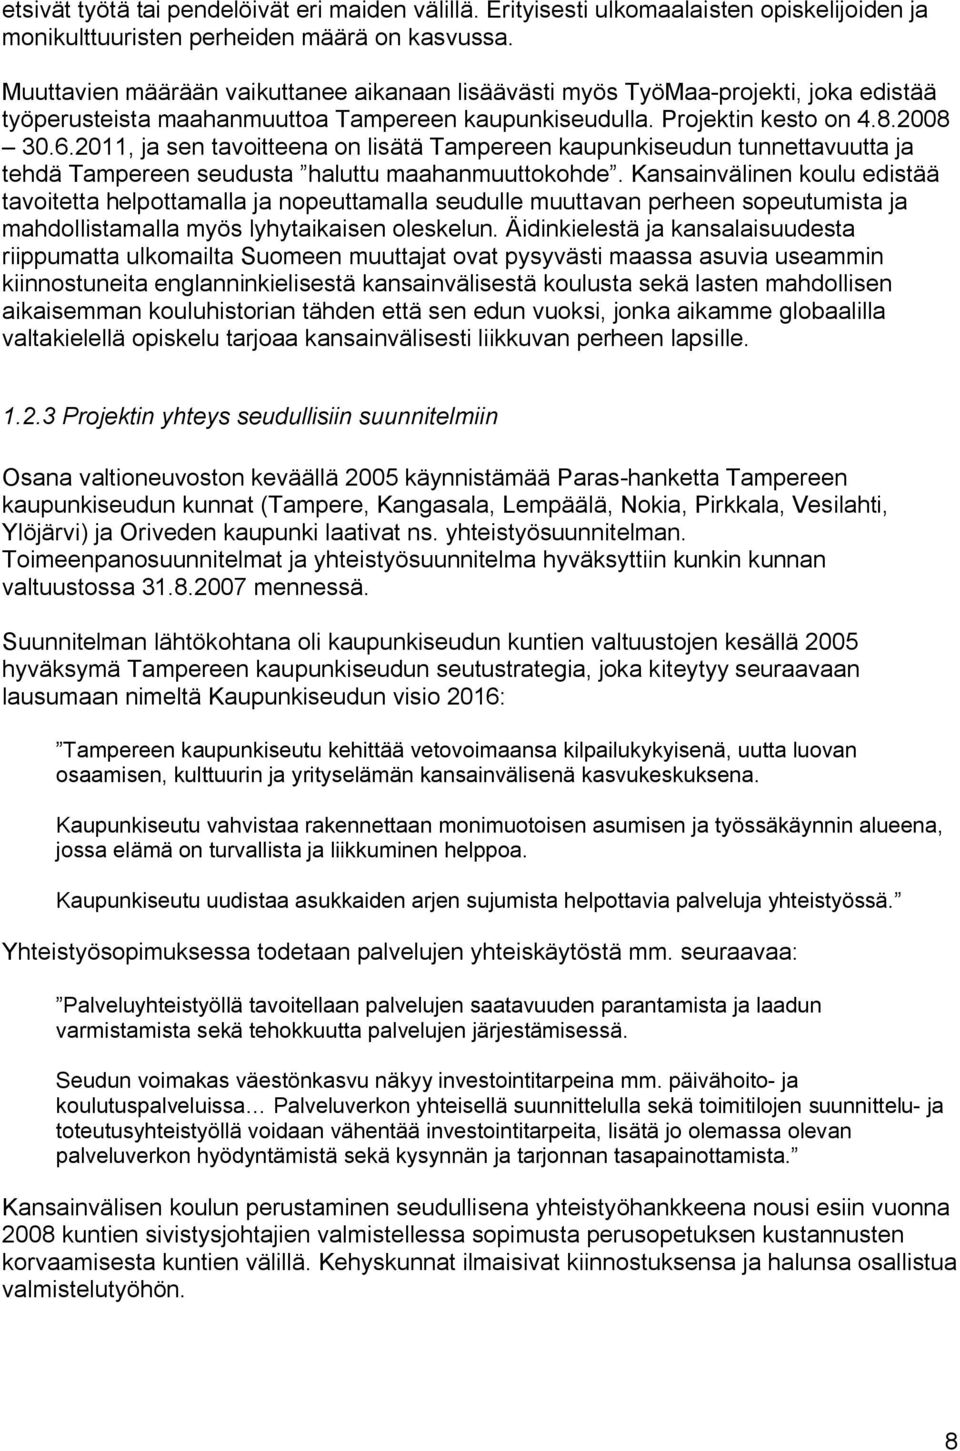 2011, ja sen tavoitteena on lisätä Tampereen kaupunkiseudun tunnettavuutta ja tehdä Tampereen seudusta haluttu maahanmuuttokohde.